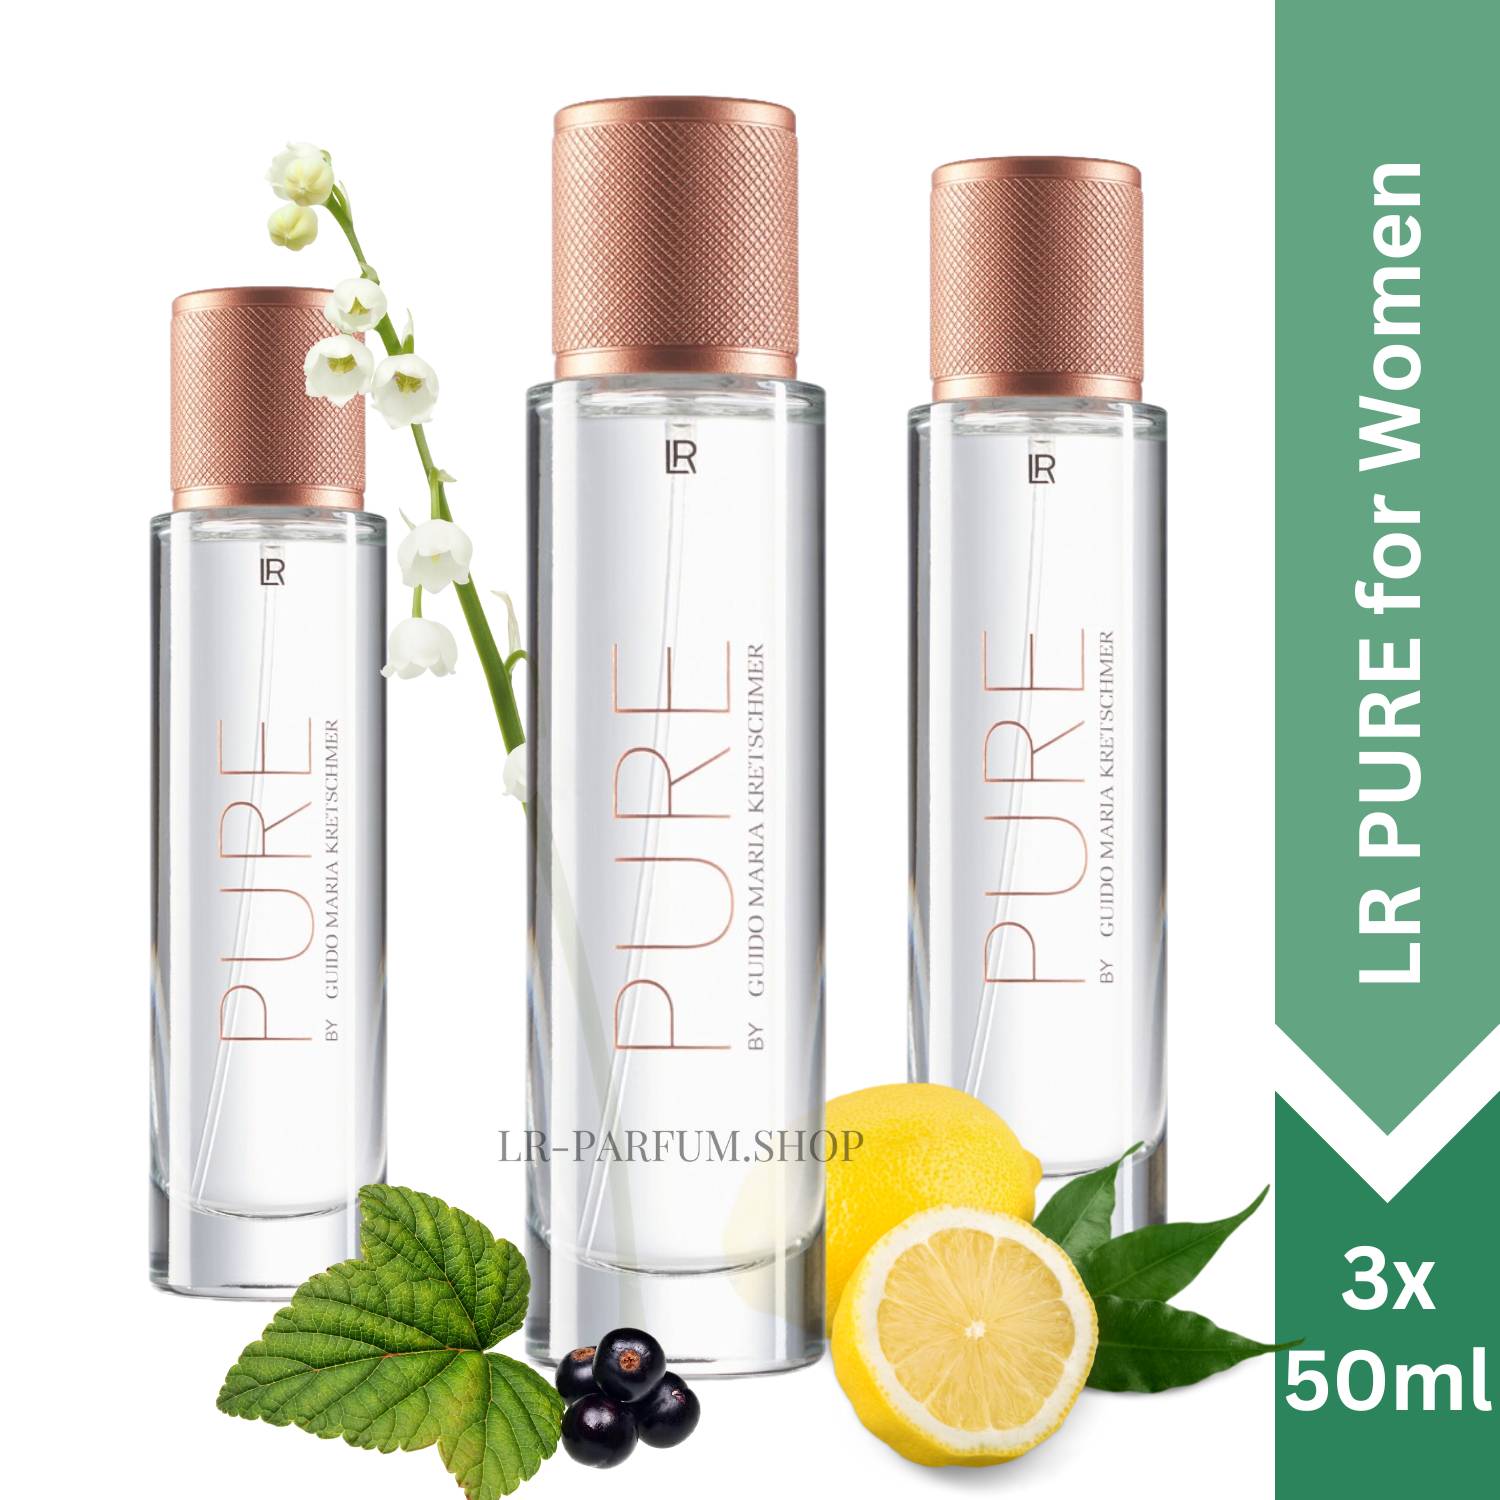 LR PURE for women by Guido Maria Kretschmer - Eau de Parfum, 3er Pack (3x50ml) - LR-Parfum.shop